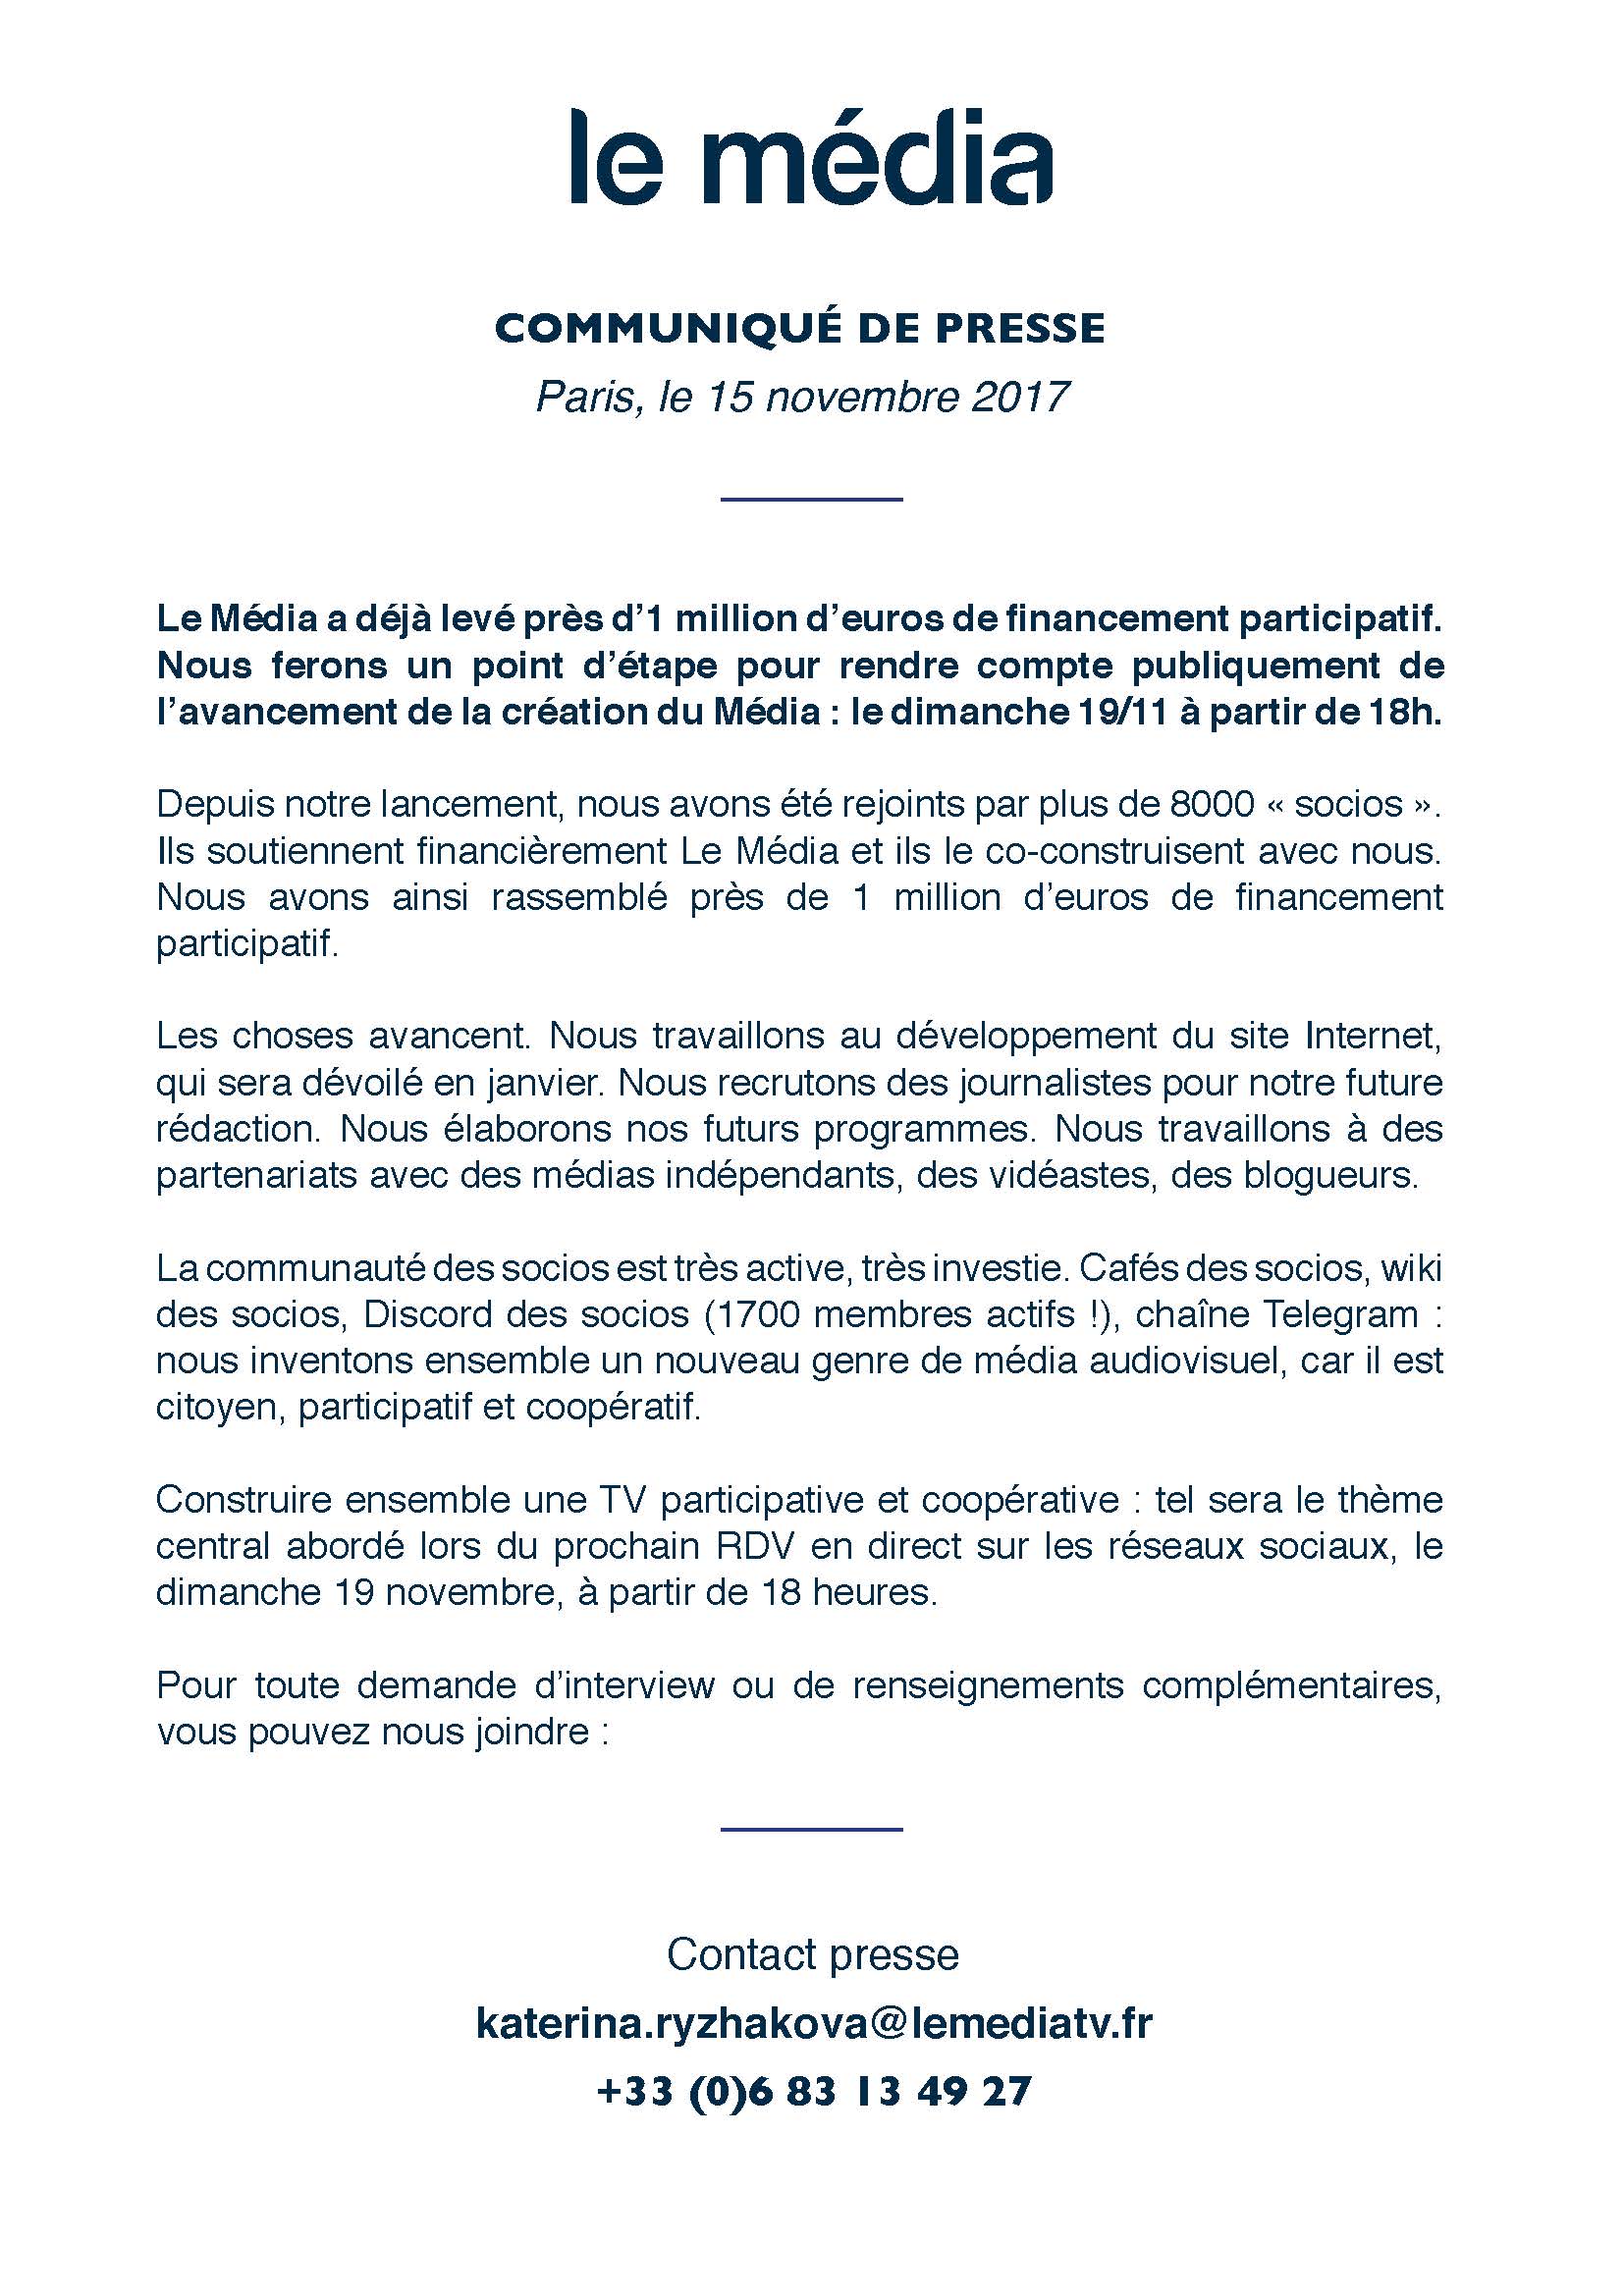 cp-le-media-event-19-nov-2017